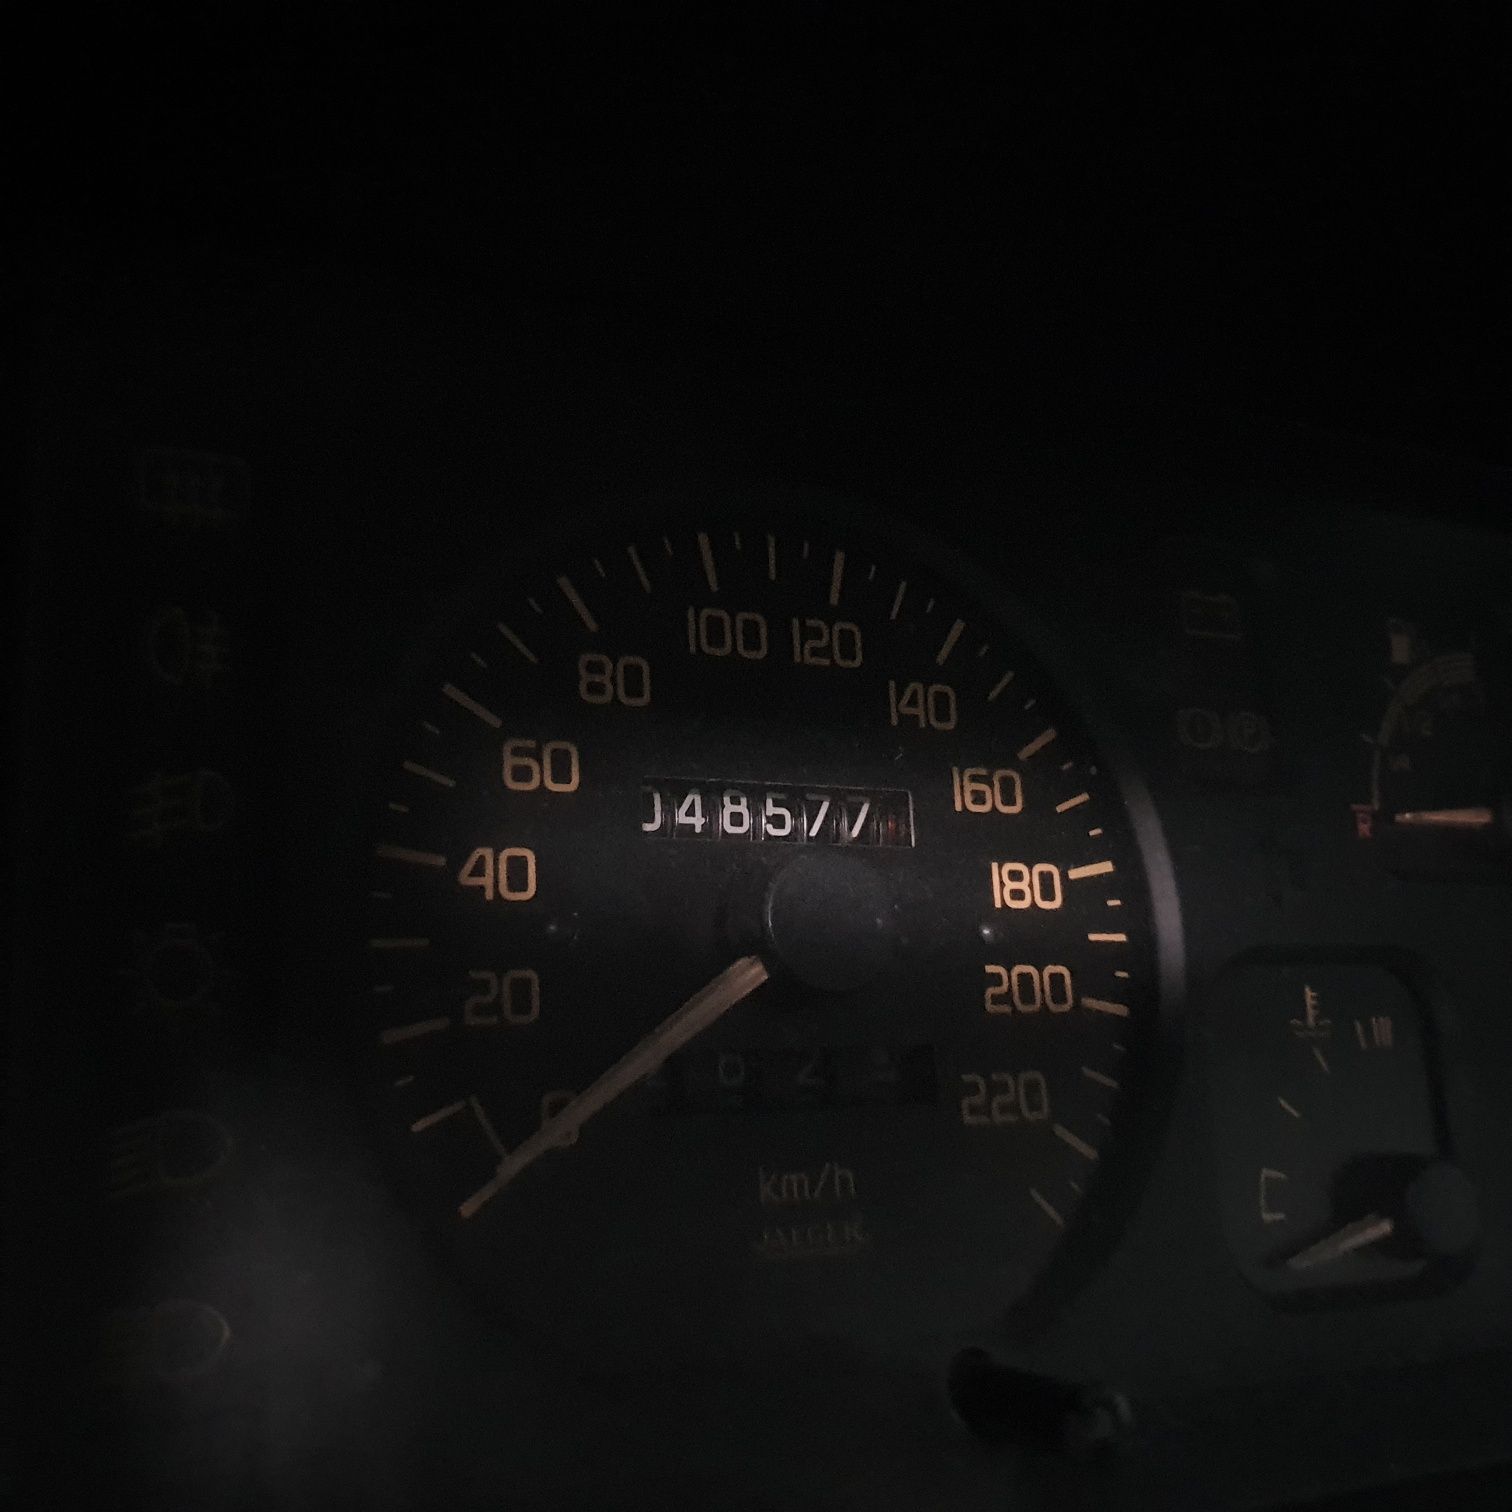 Renault 19 poucos kms
Ano-1991
Cilindrada- 1200
Combustível-Gasolina